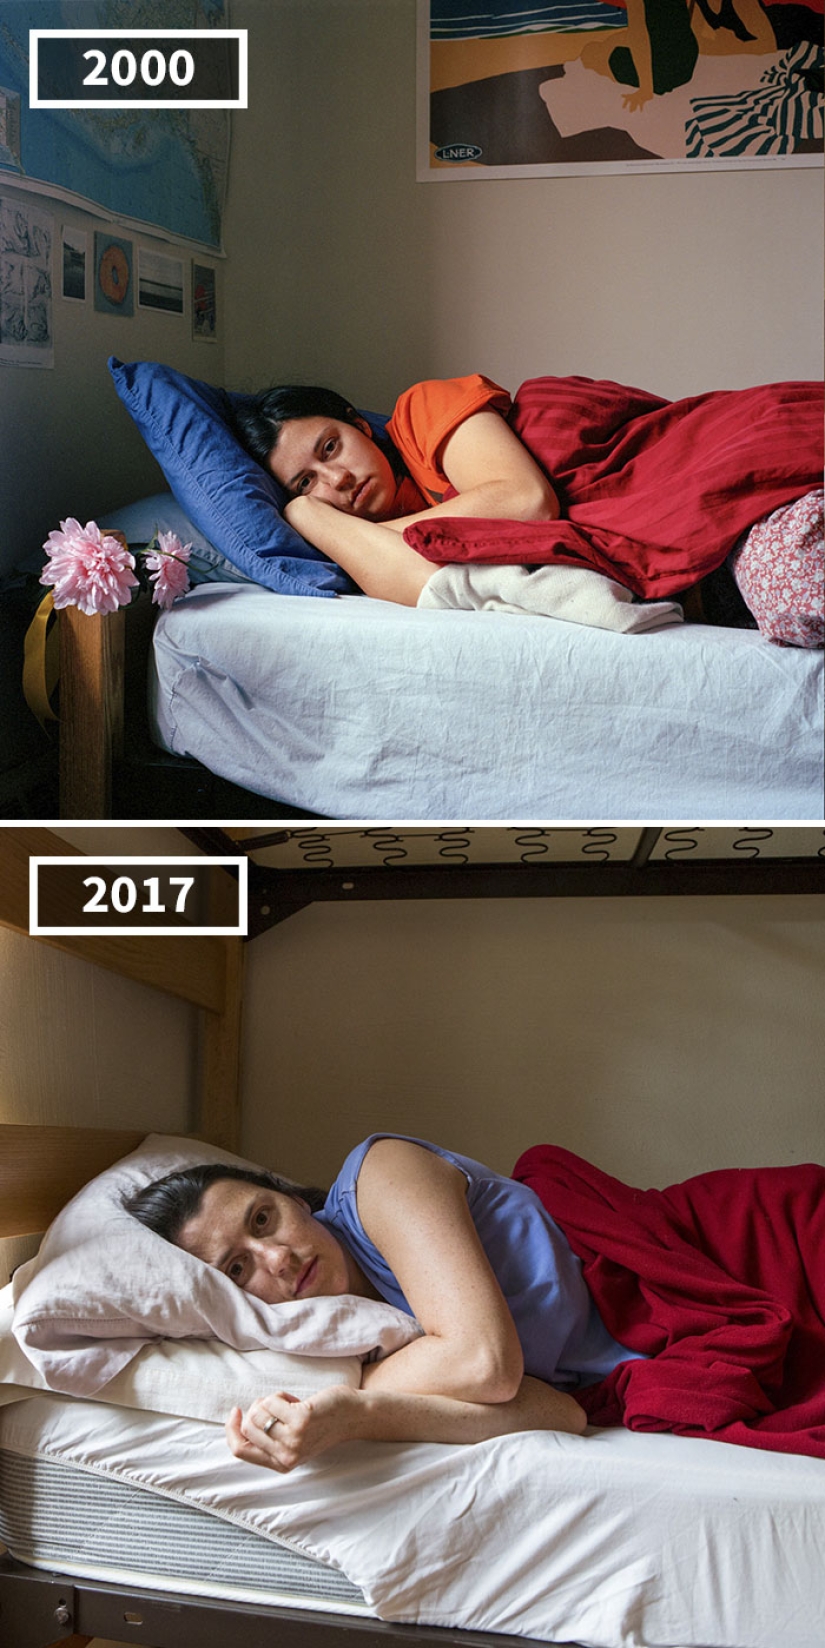 17 años después: el fotógrafo utiliza el ejemplo de los amigos para mostrar cómo las personas crecen de diferentes maneras